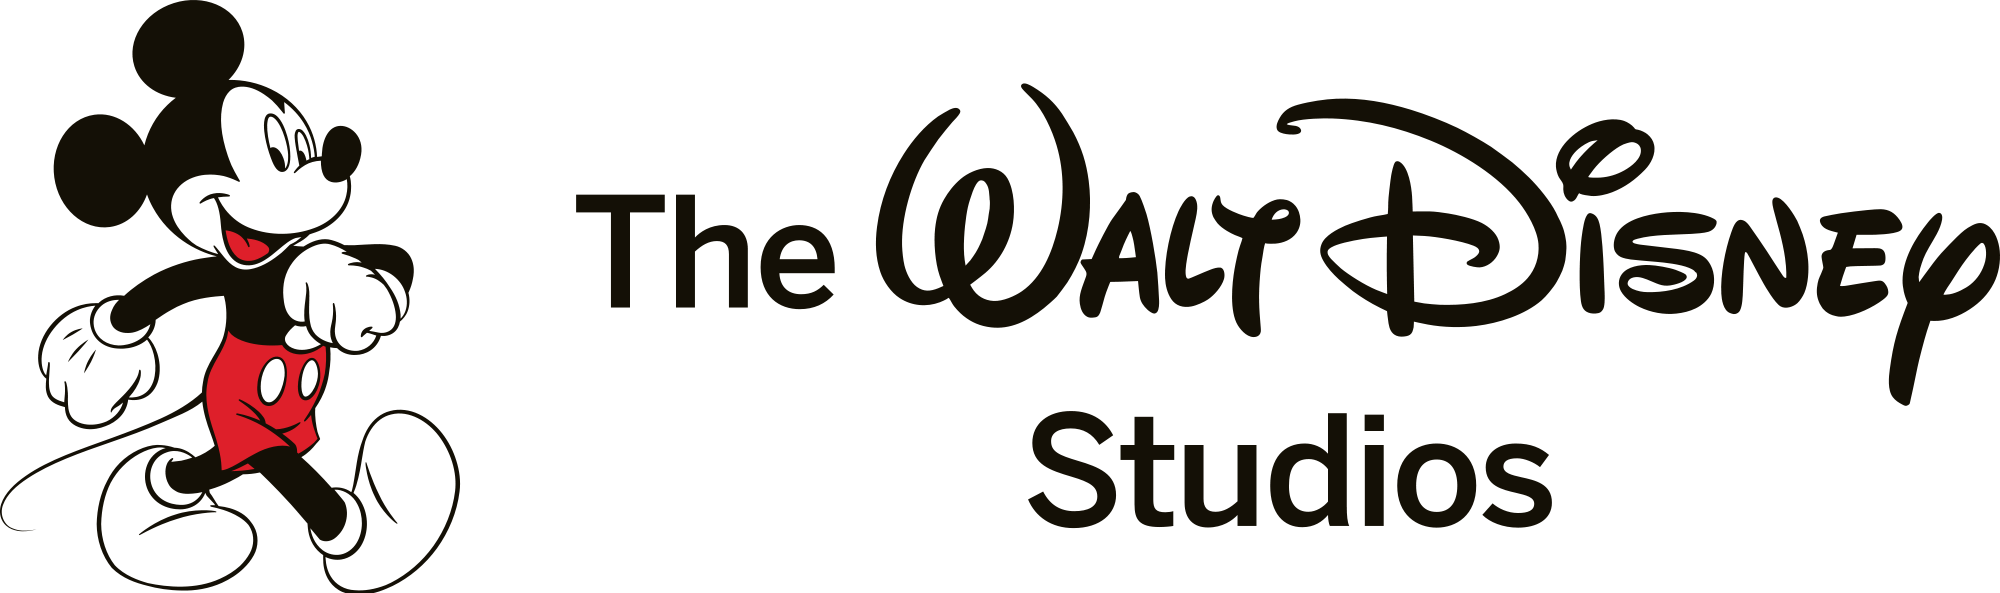 D23 Recap: Walt Disney Studios Live-Action - Marvel Studios, Star 